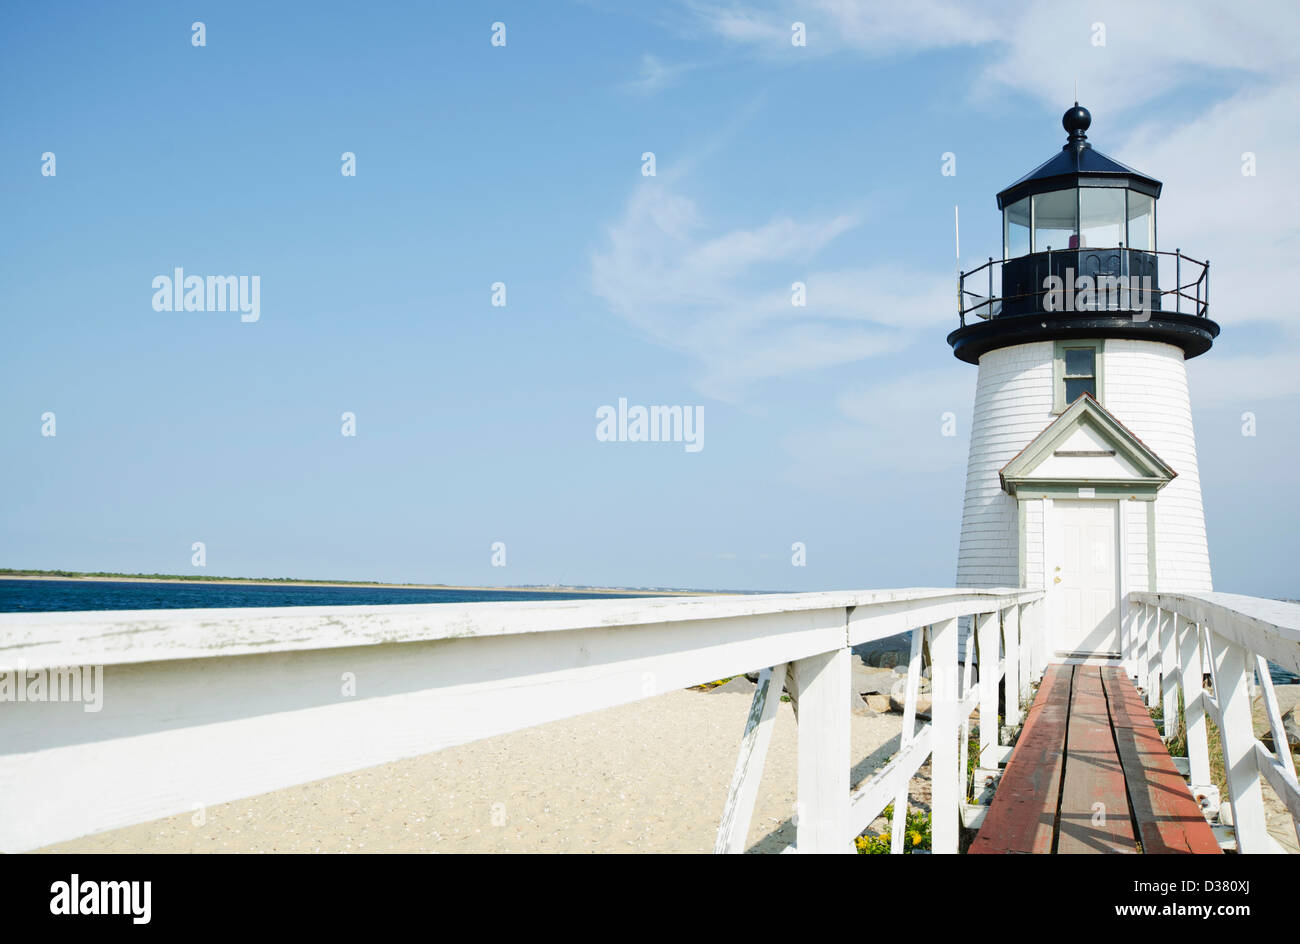 USA, Massachusetts, Nantucket Island, le phare sur une plage de sable Banque D'Images